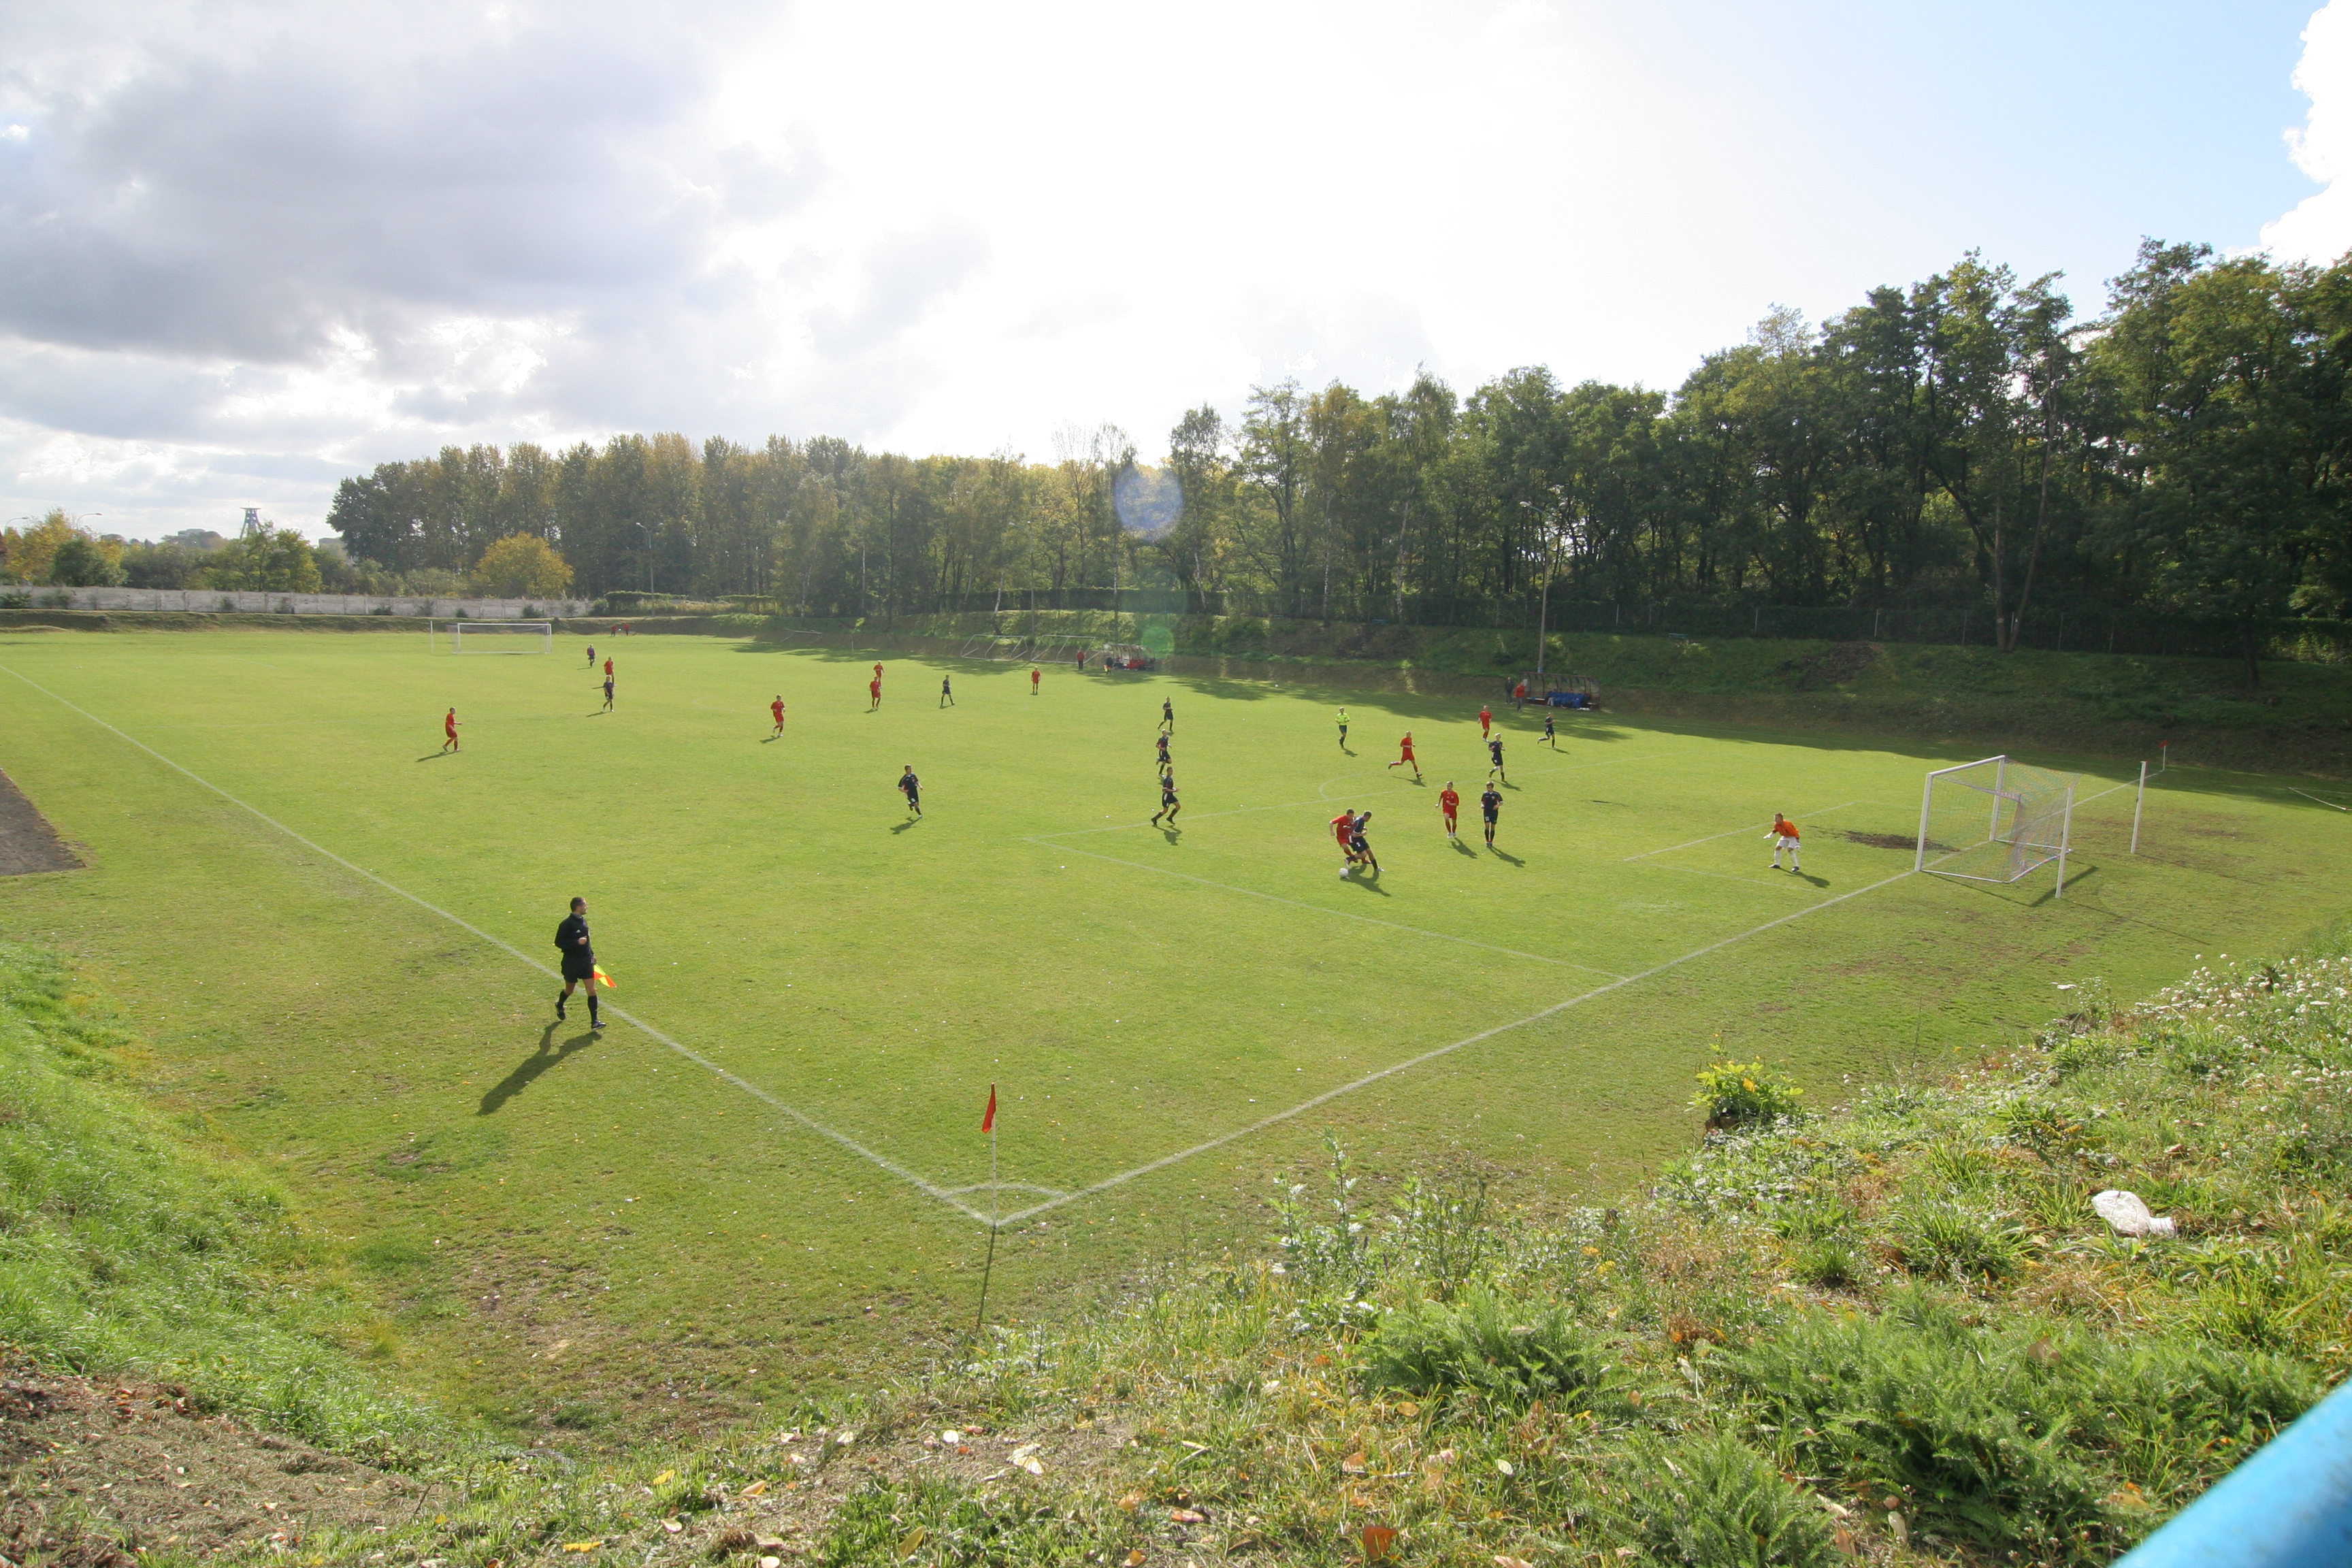 GKS Piast sports field at Baildona housing estate